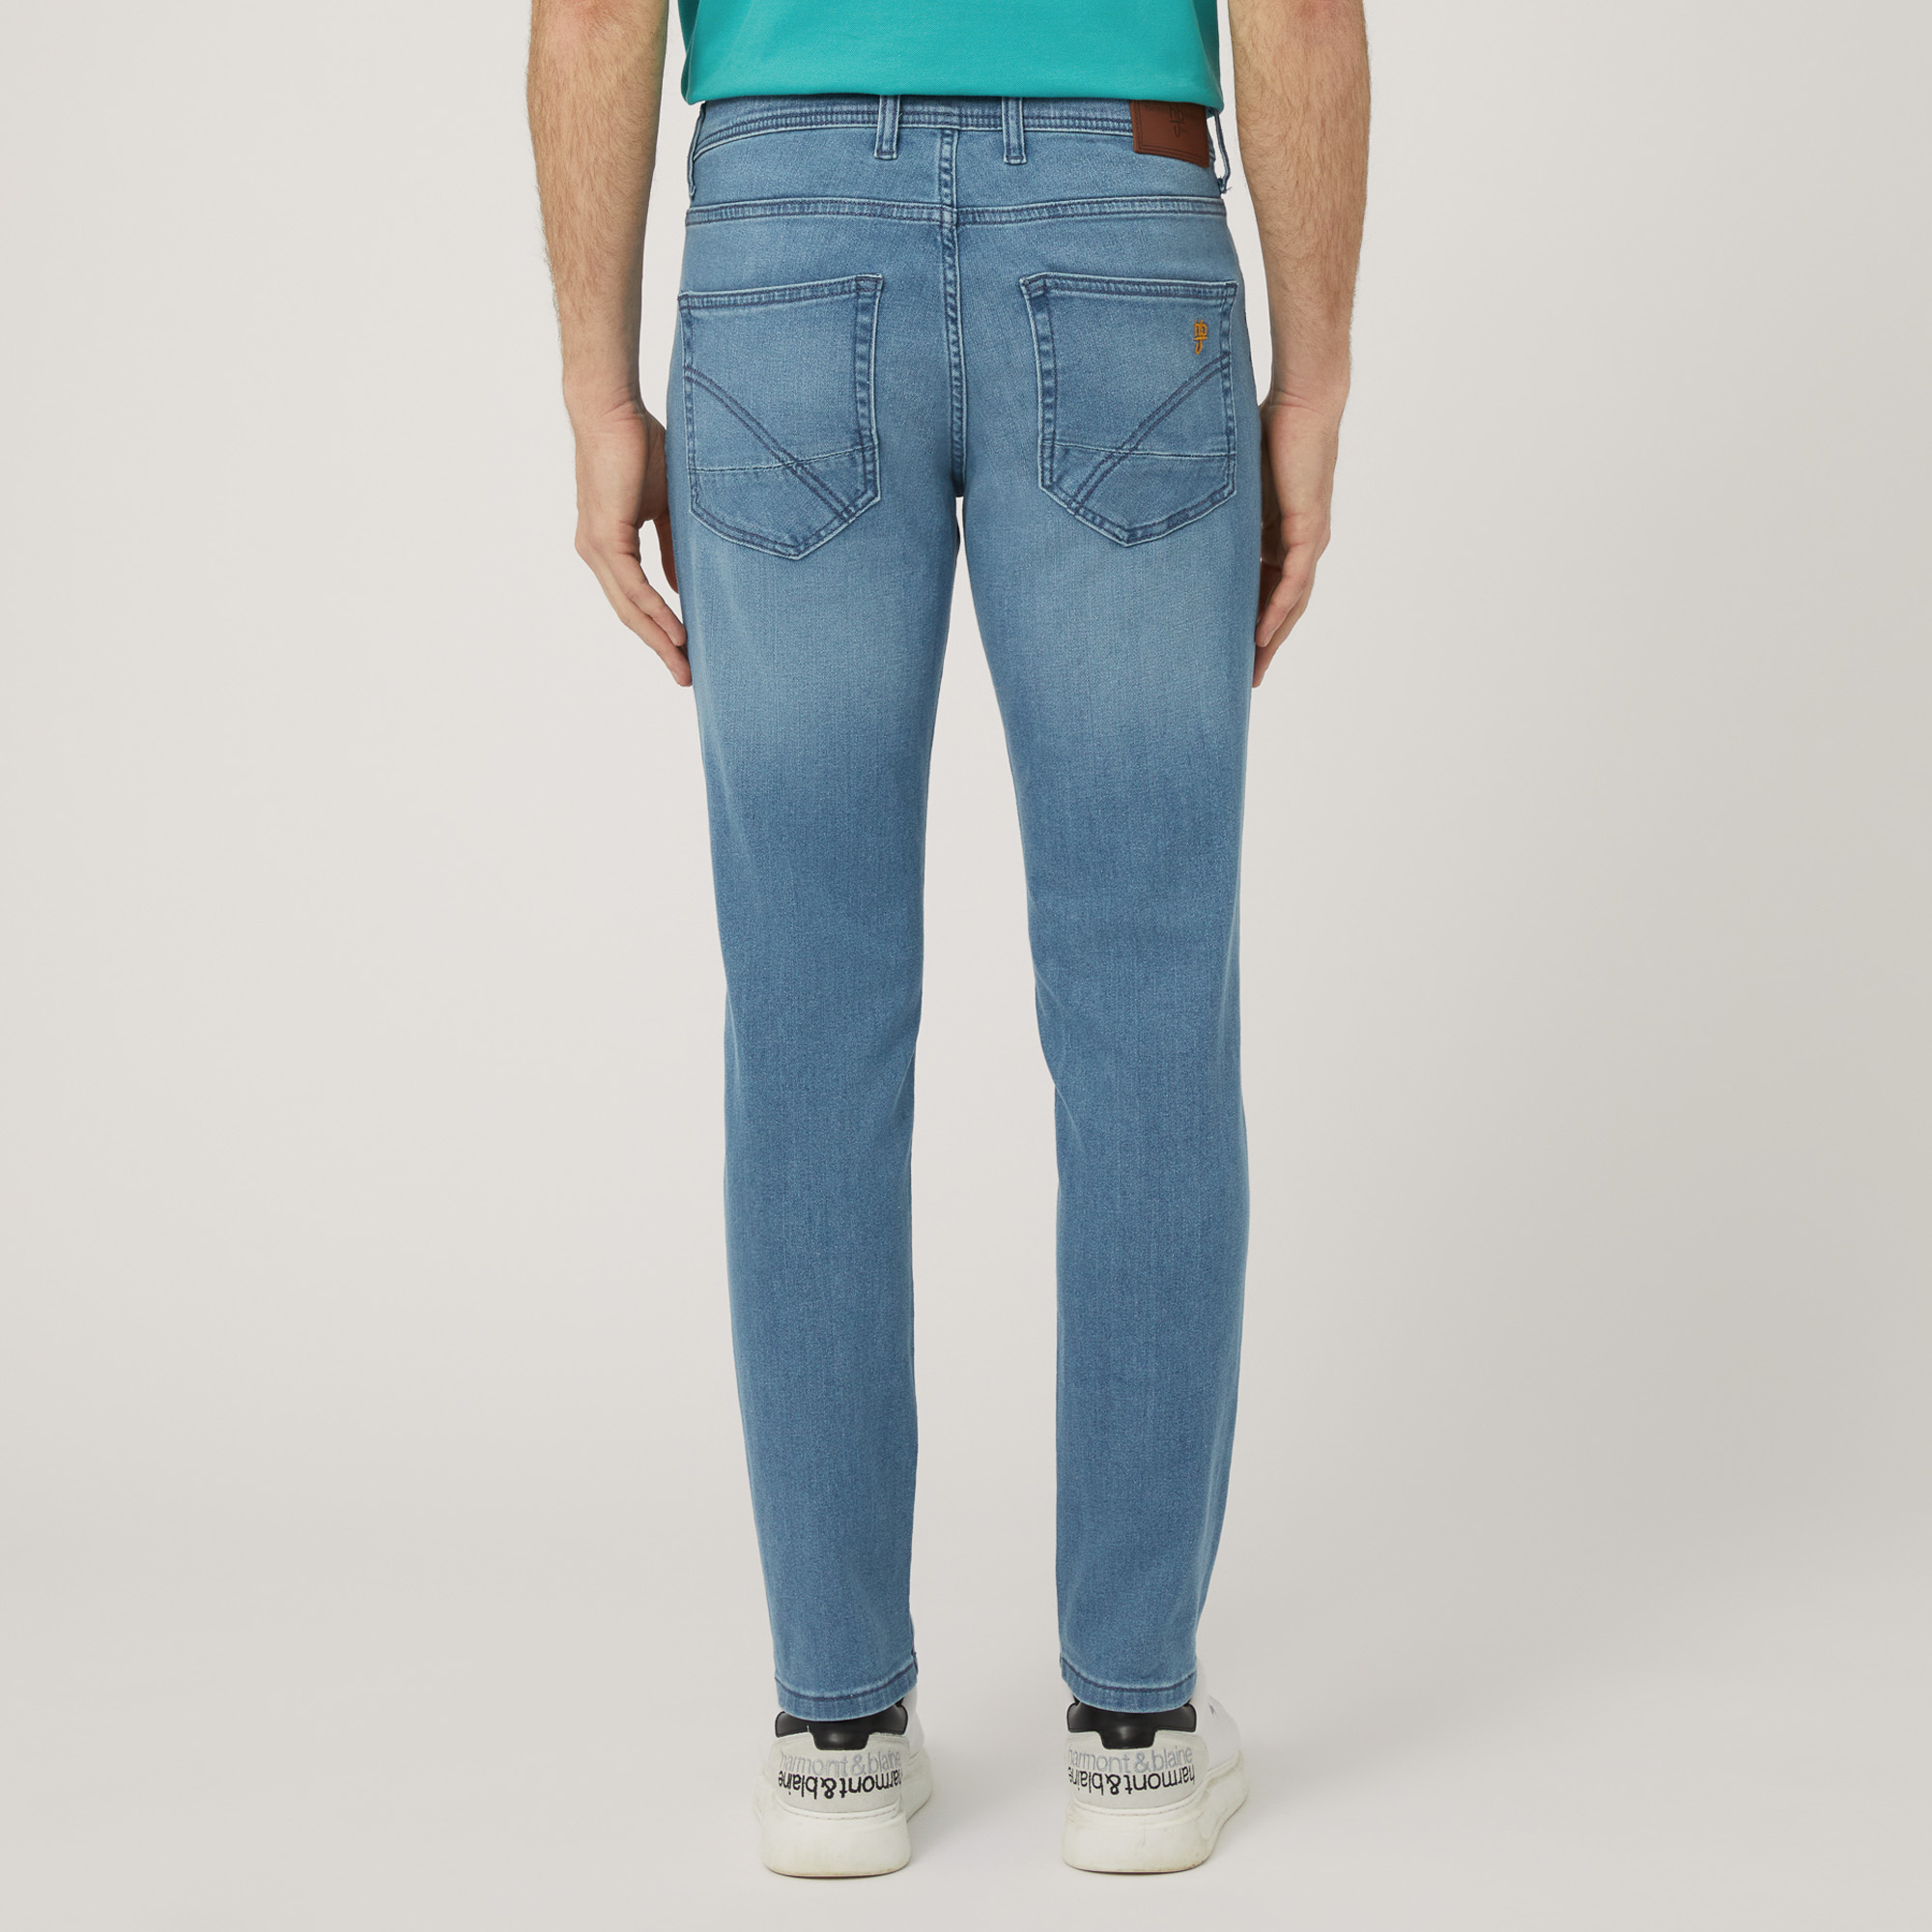 Pantaloni In Denim Slim Fit, Blu Denim, large image number 1